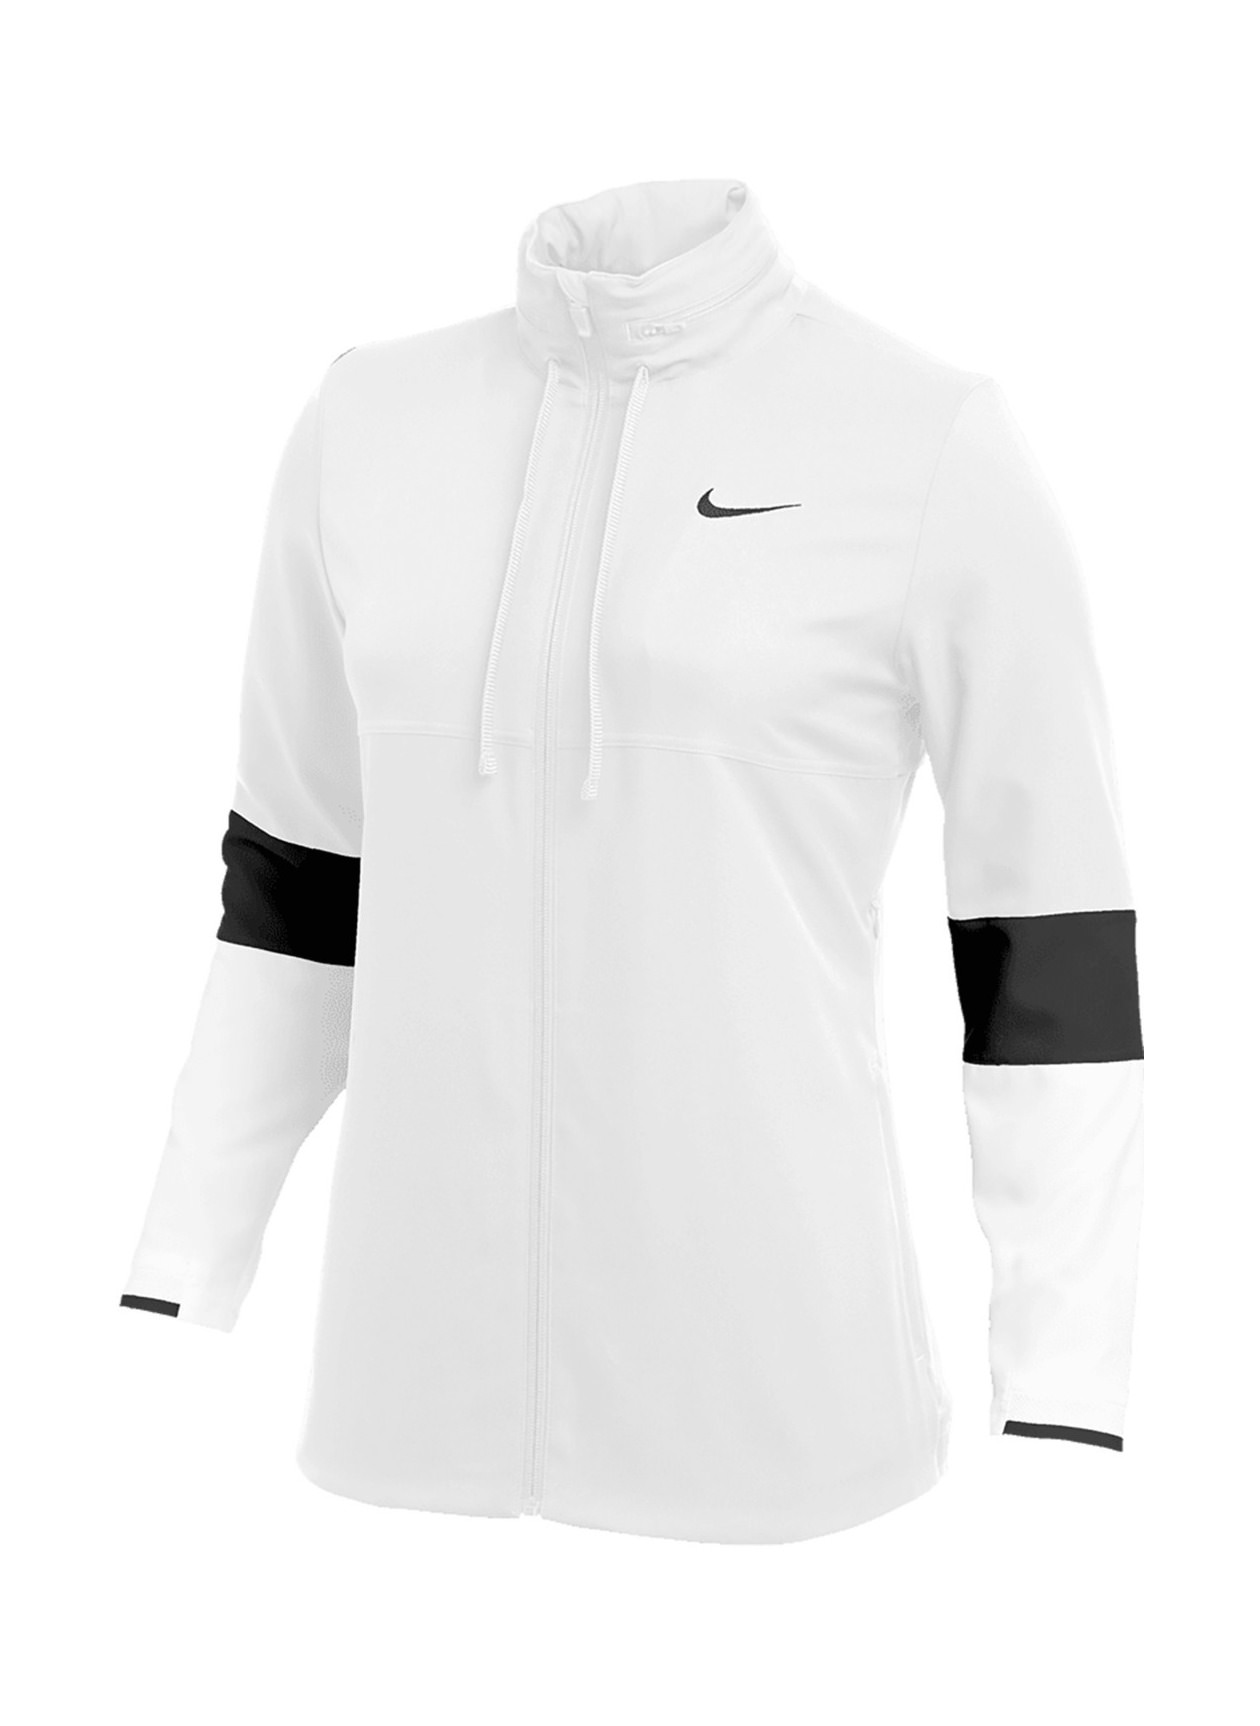 Nike Womens Dri-FIT UV Advantage Half-Zip Top Black